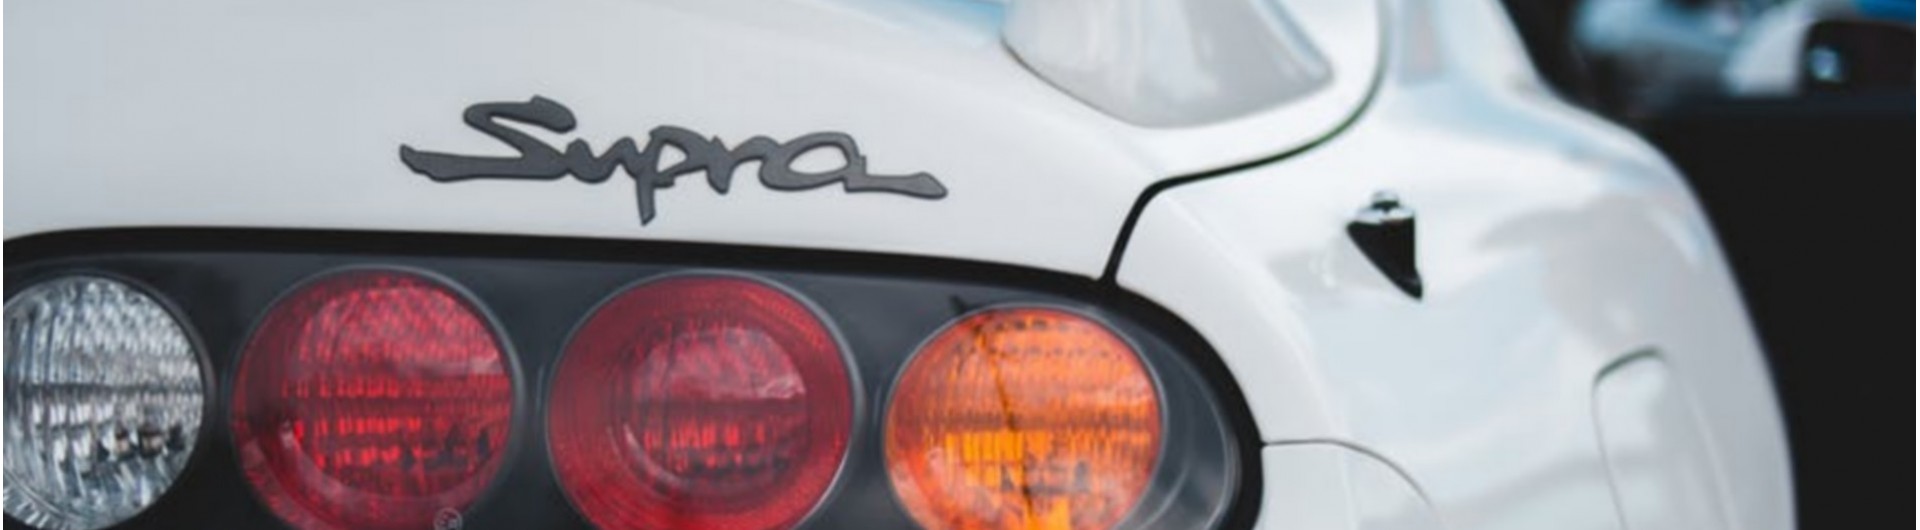 Vos pièces performance et design pour Toyota Supra